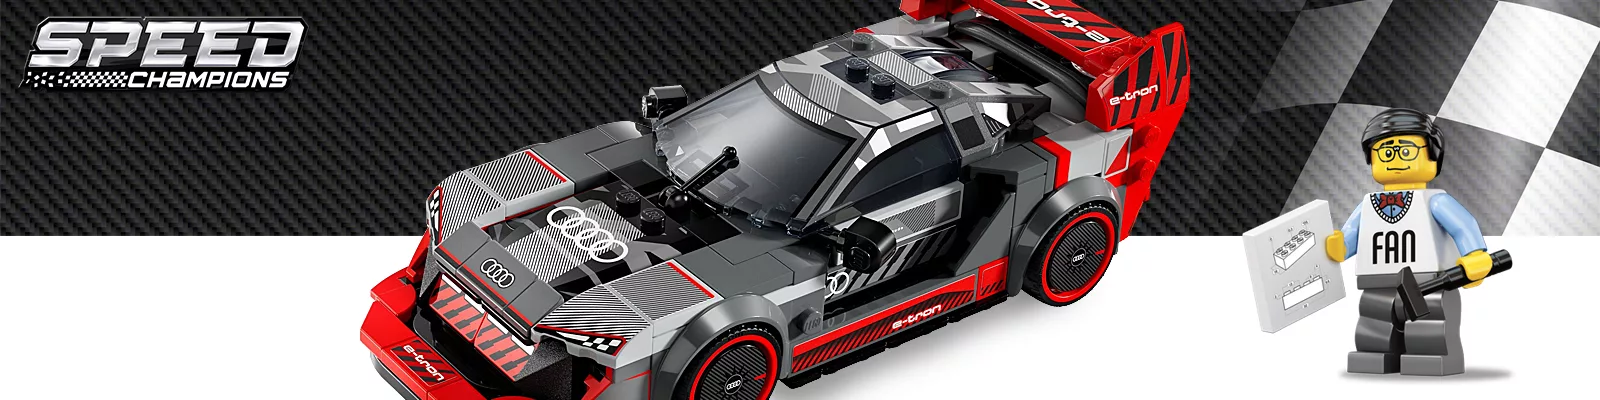 Lego Ferrari modellini più belli dettagli prezzo scala